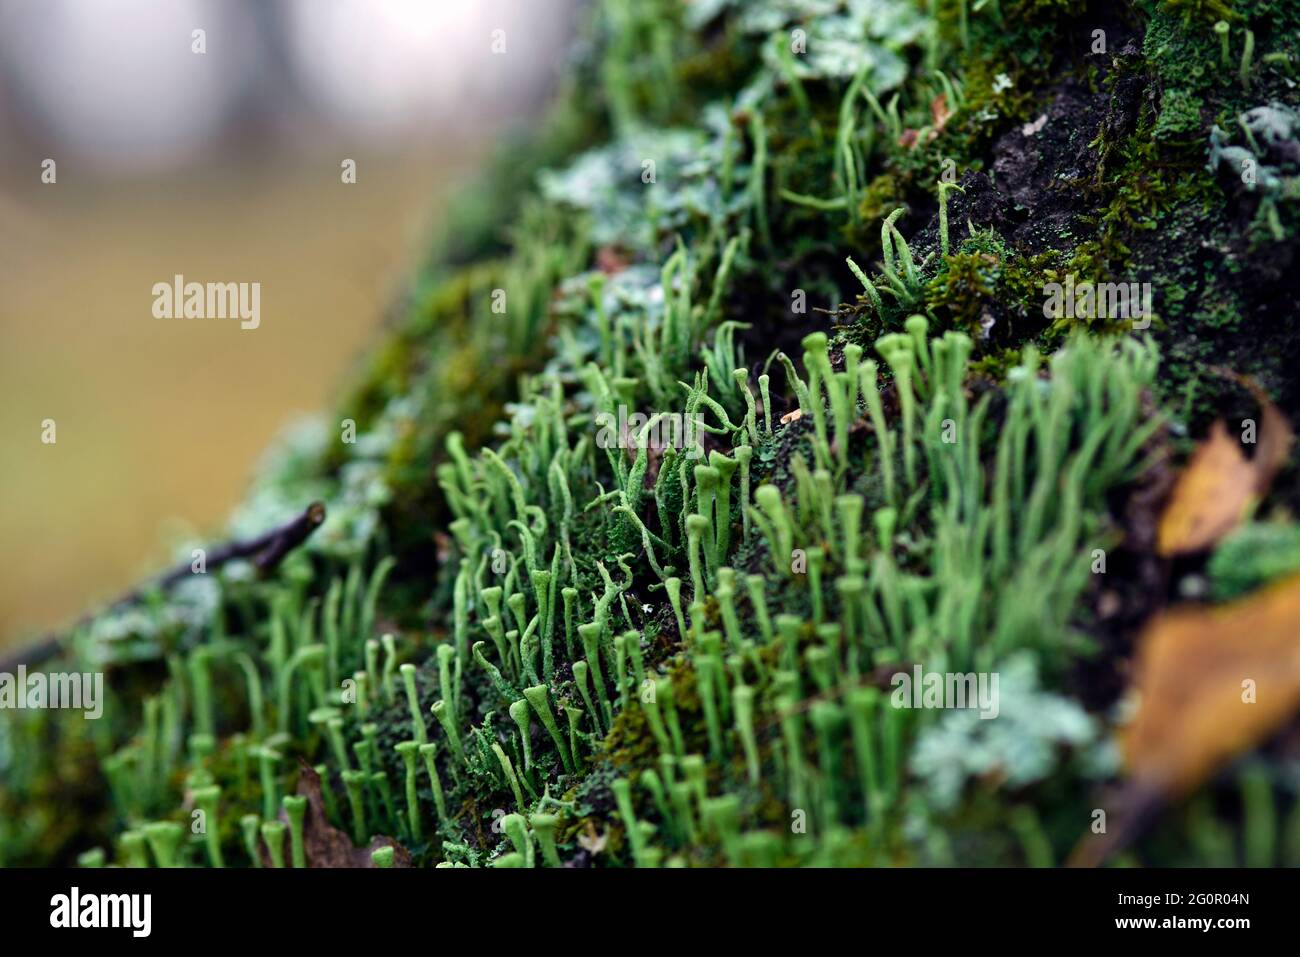 Lichen cladonia coniocraea and moss on tree bark in autumn forest. Stock Photo